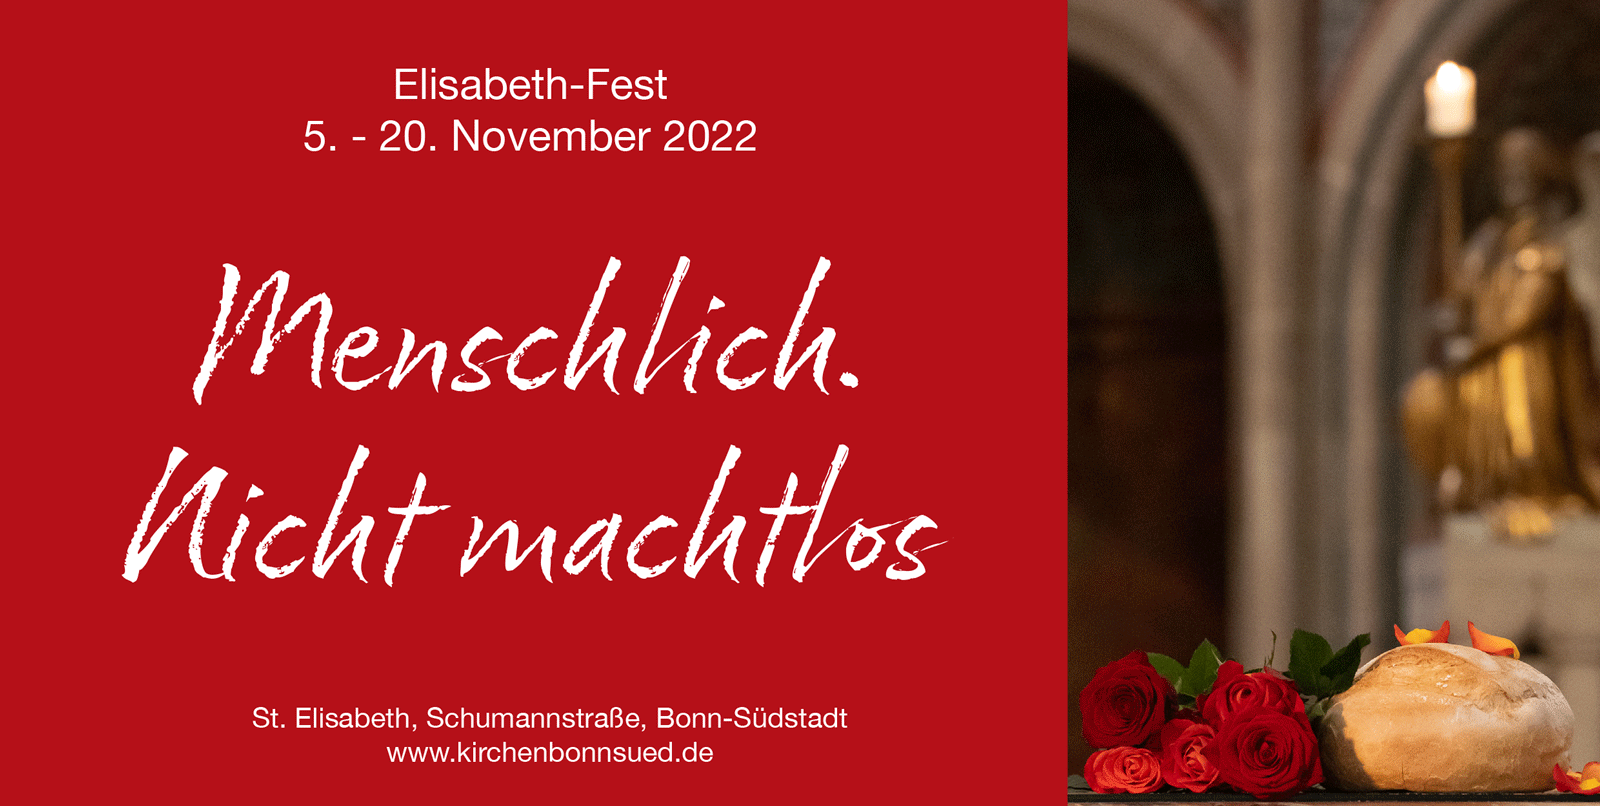 Einladung Elisabethfest 2022